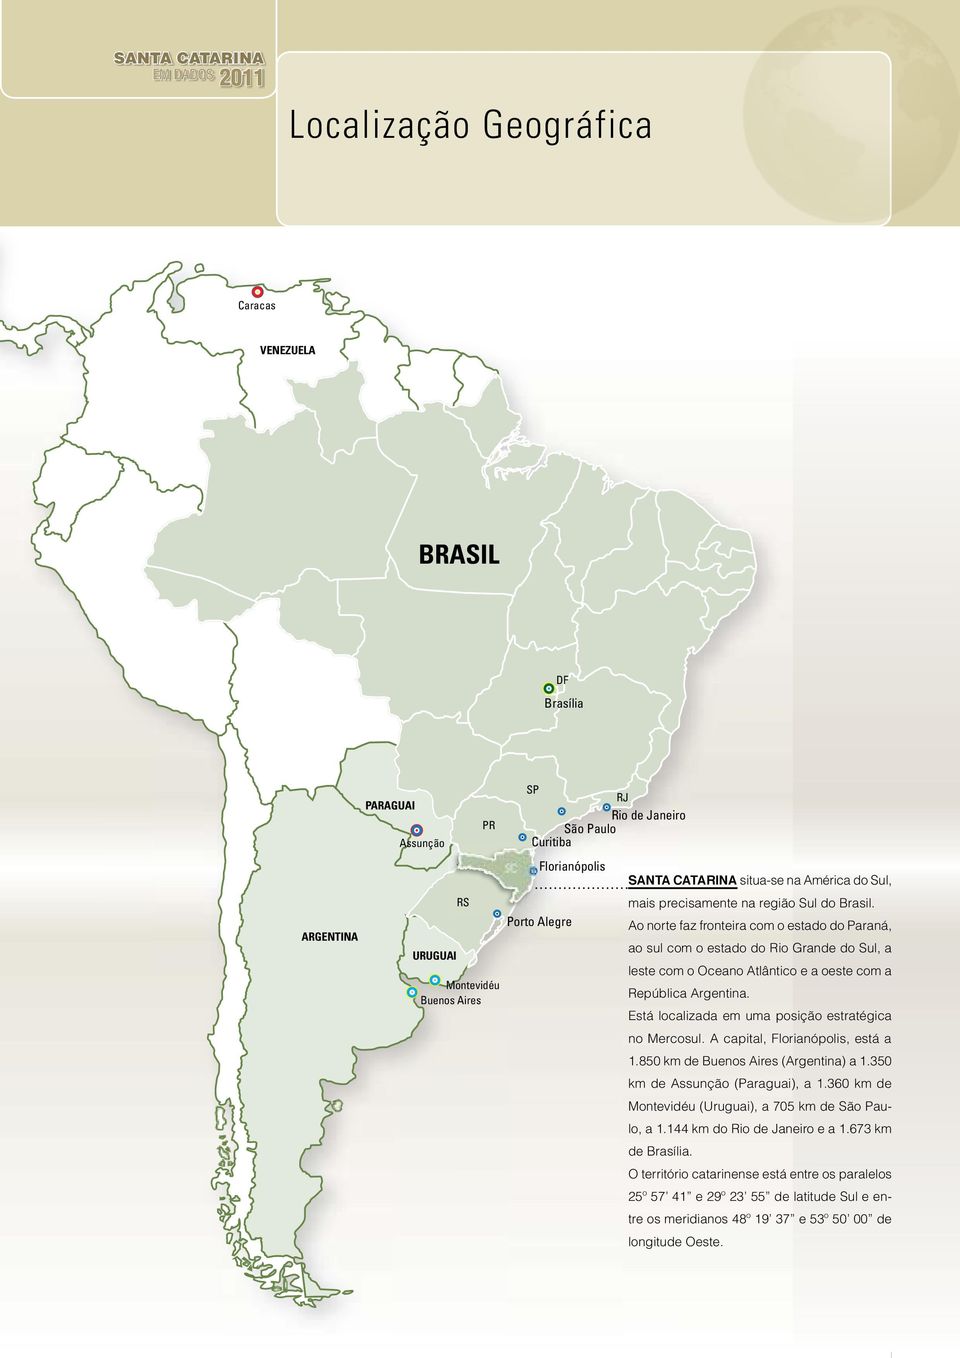 Ao norte faz fronteira com o estado do Paraná, ao sul com o estado do Rio Grande do Sul, a leste com o Oceano Atlântico e a oeste com a República Argentina.